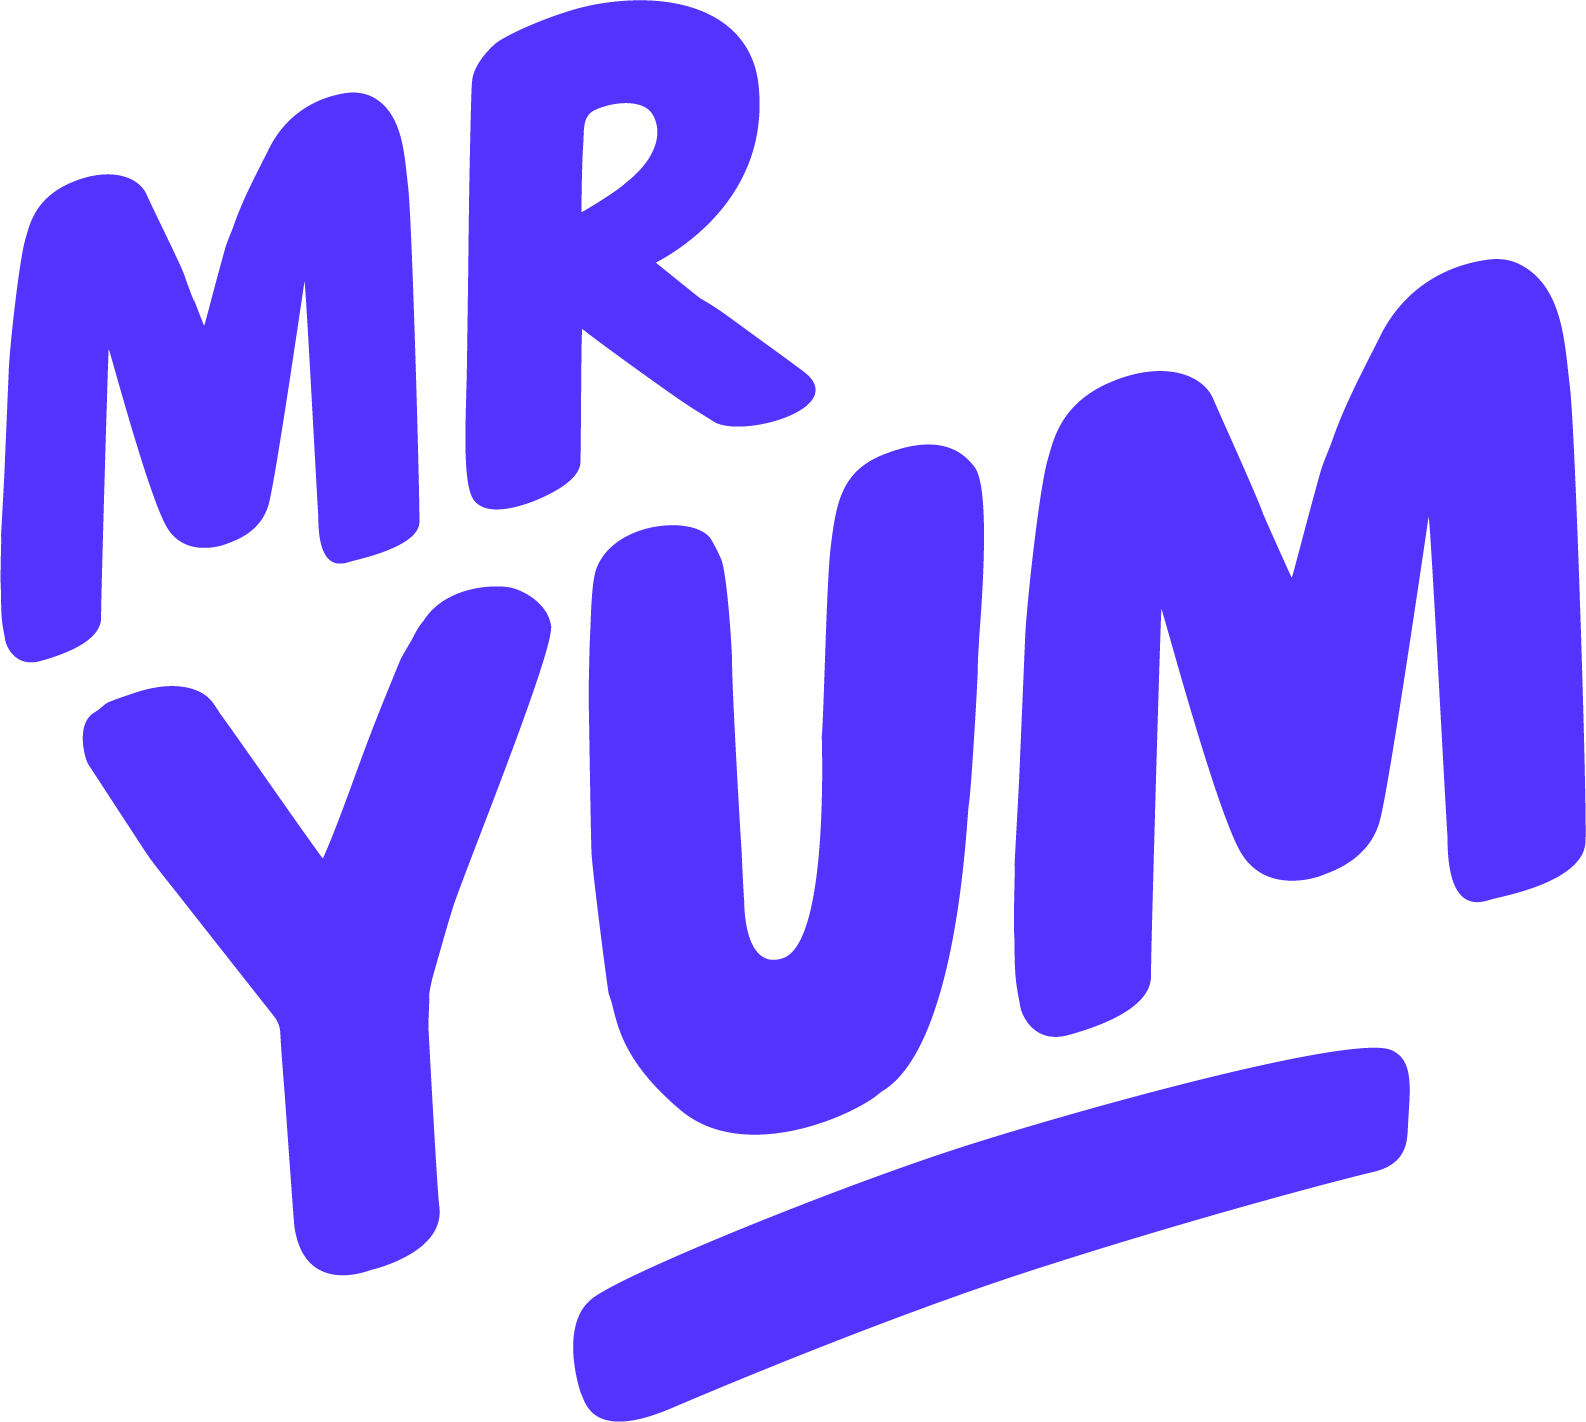 Mr Yum